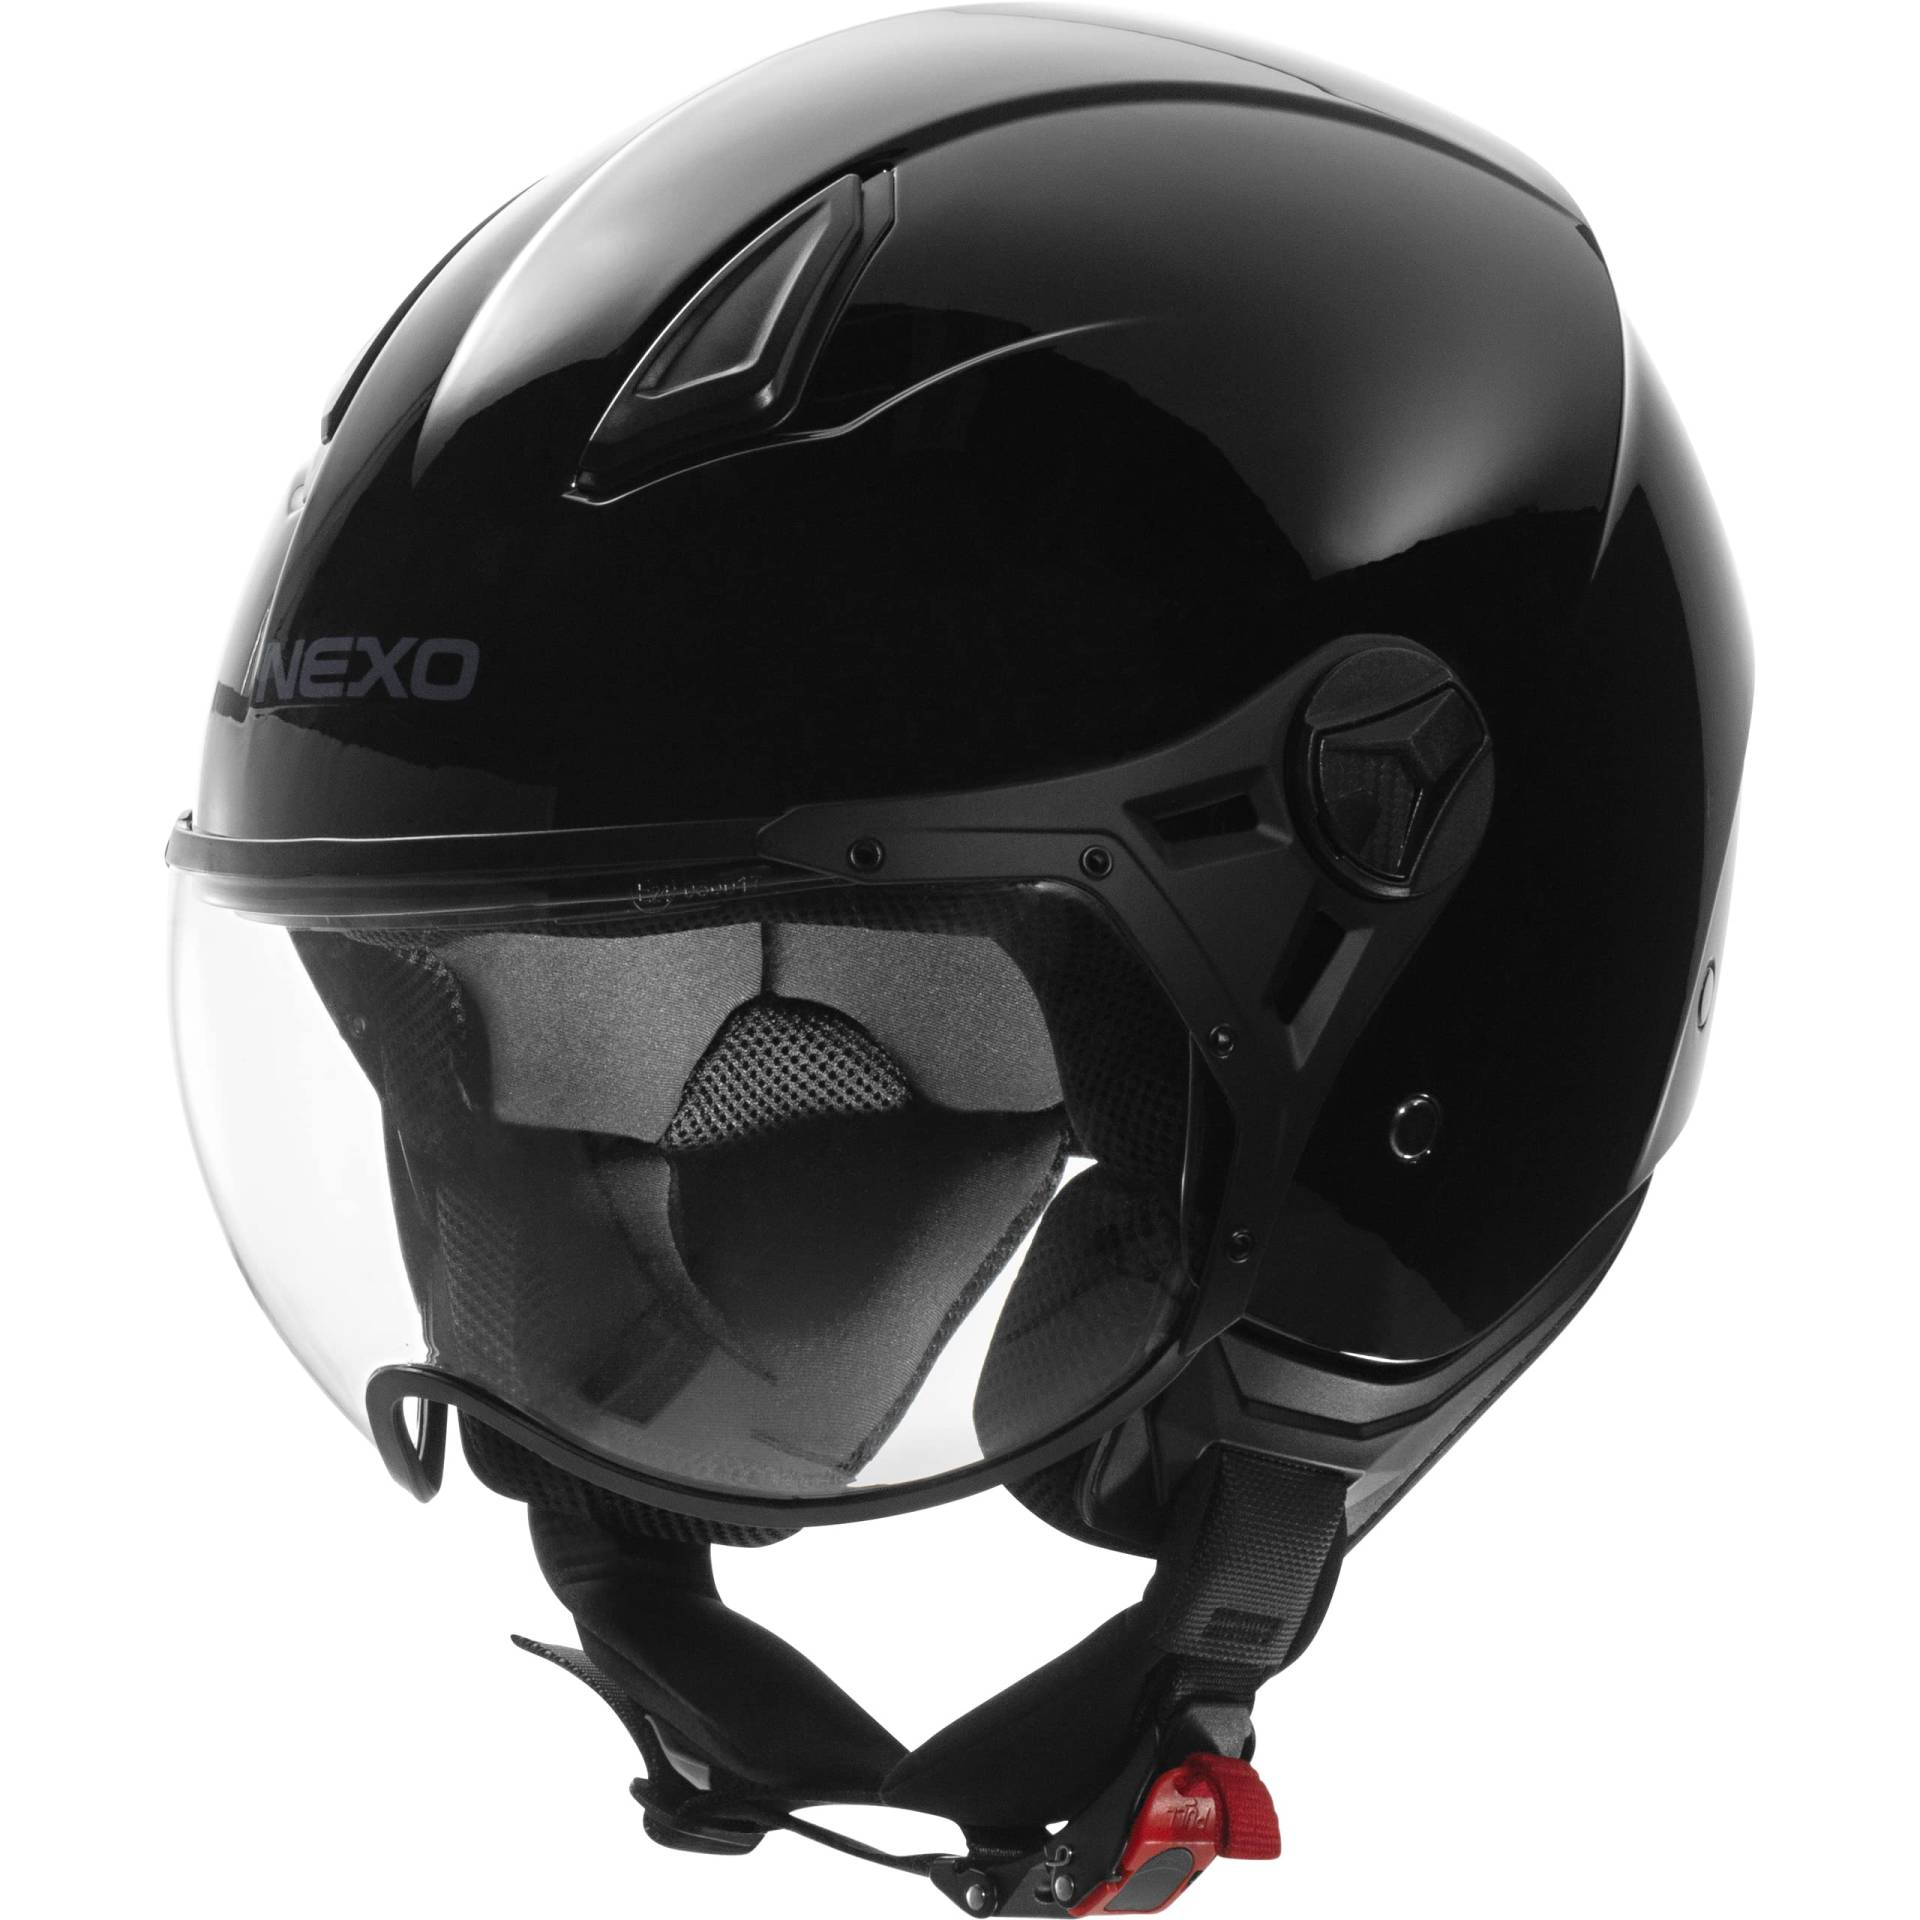 Nexo Jethelm Motorradhelm Helm Motorrad Mopedhelm Demi Jet Helm City II schwarz L, Unisex, Chopper/Cruiser, Ganzjährig, Thermoplast von Nexo